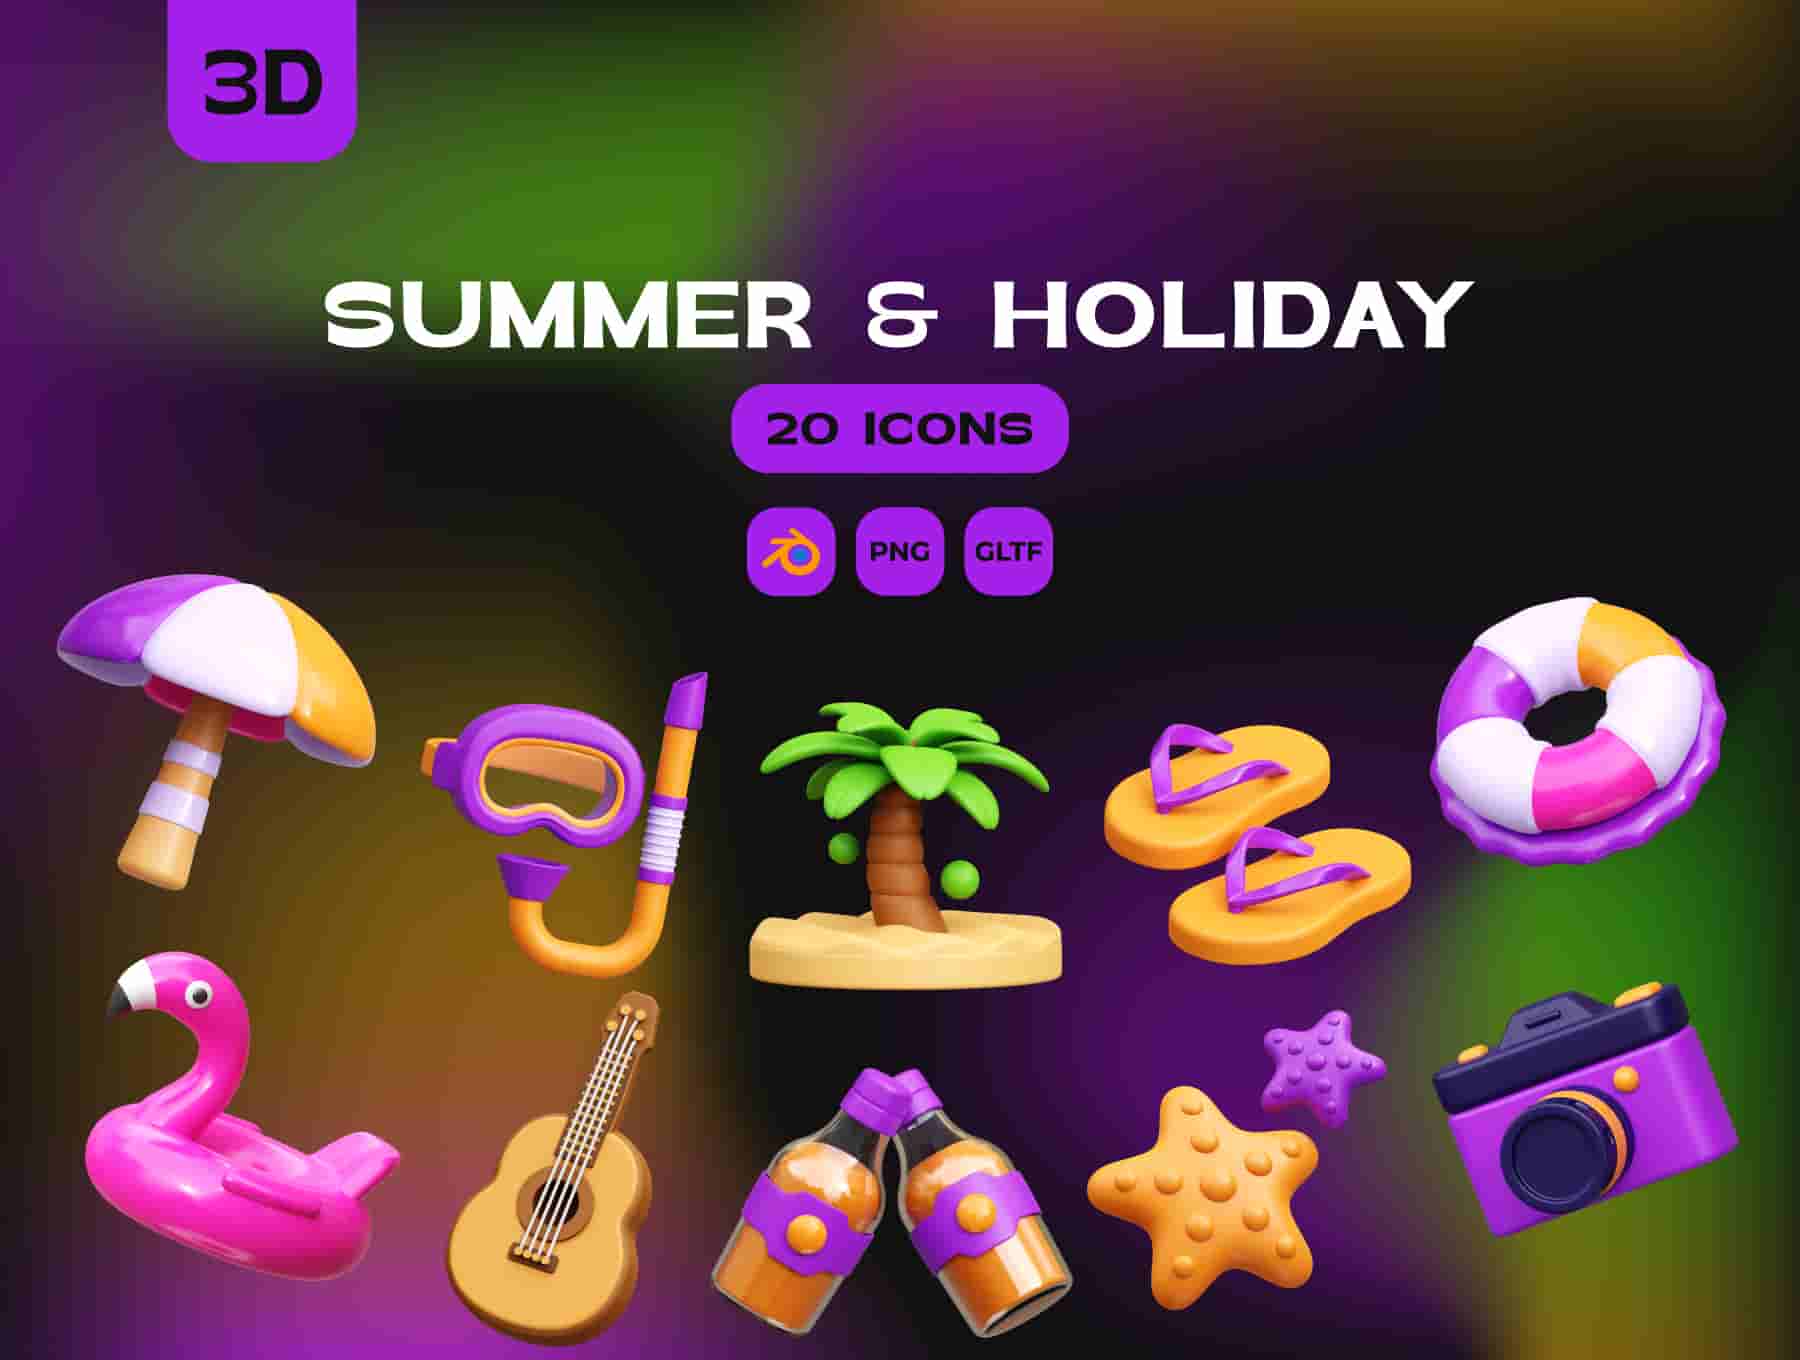 Summer & Holiday 3D illustrations